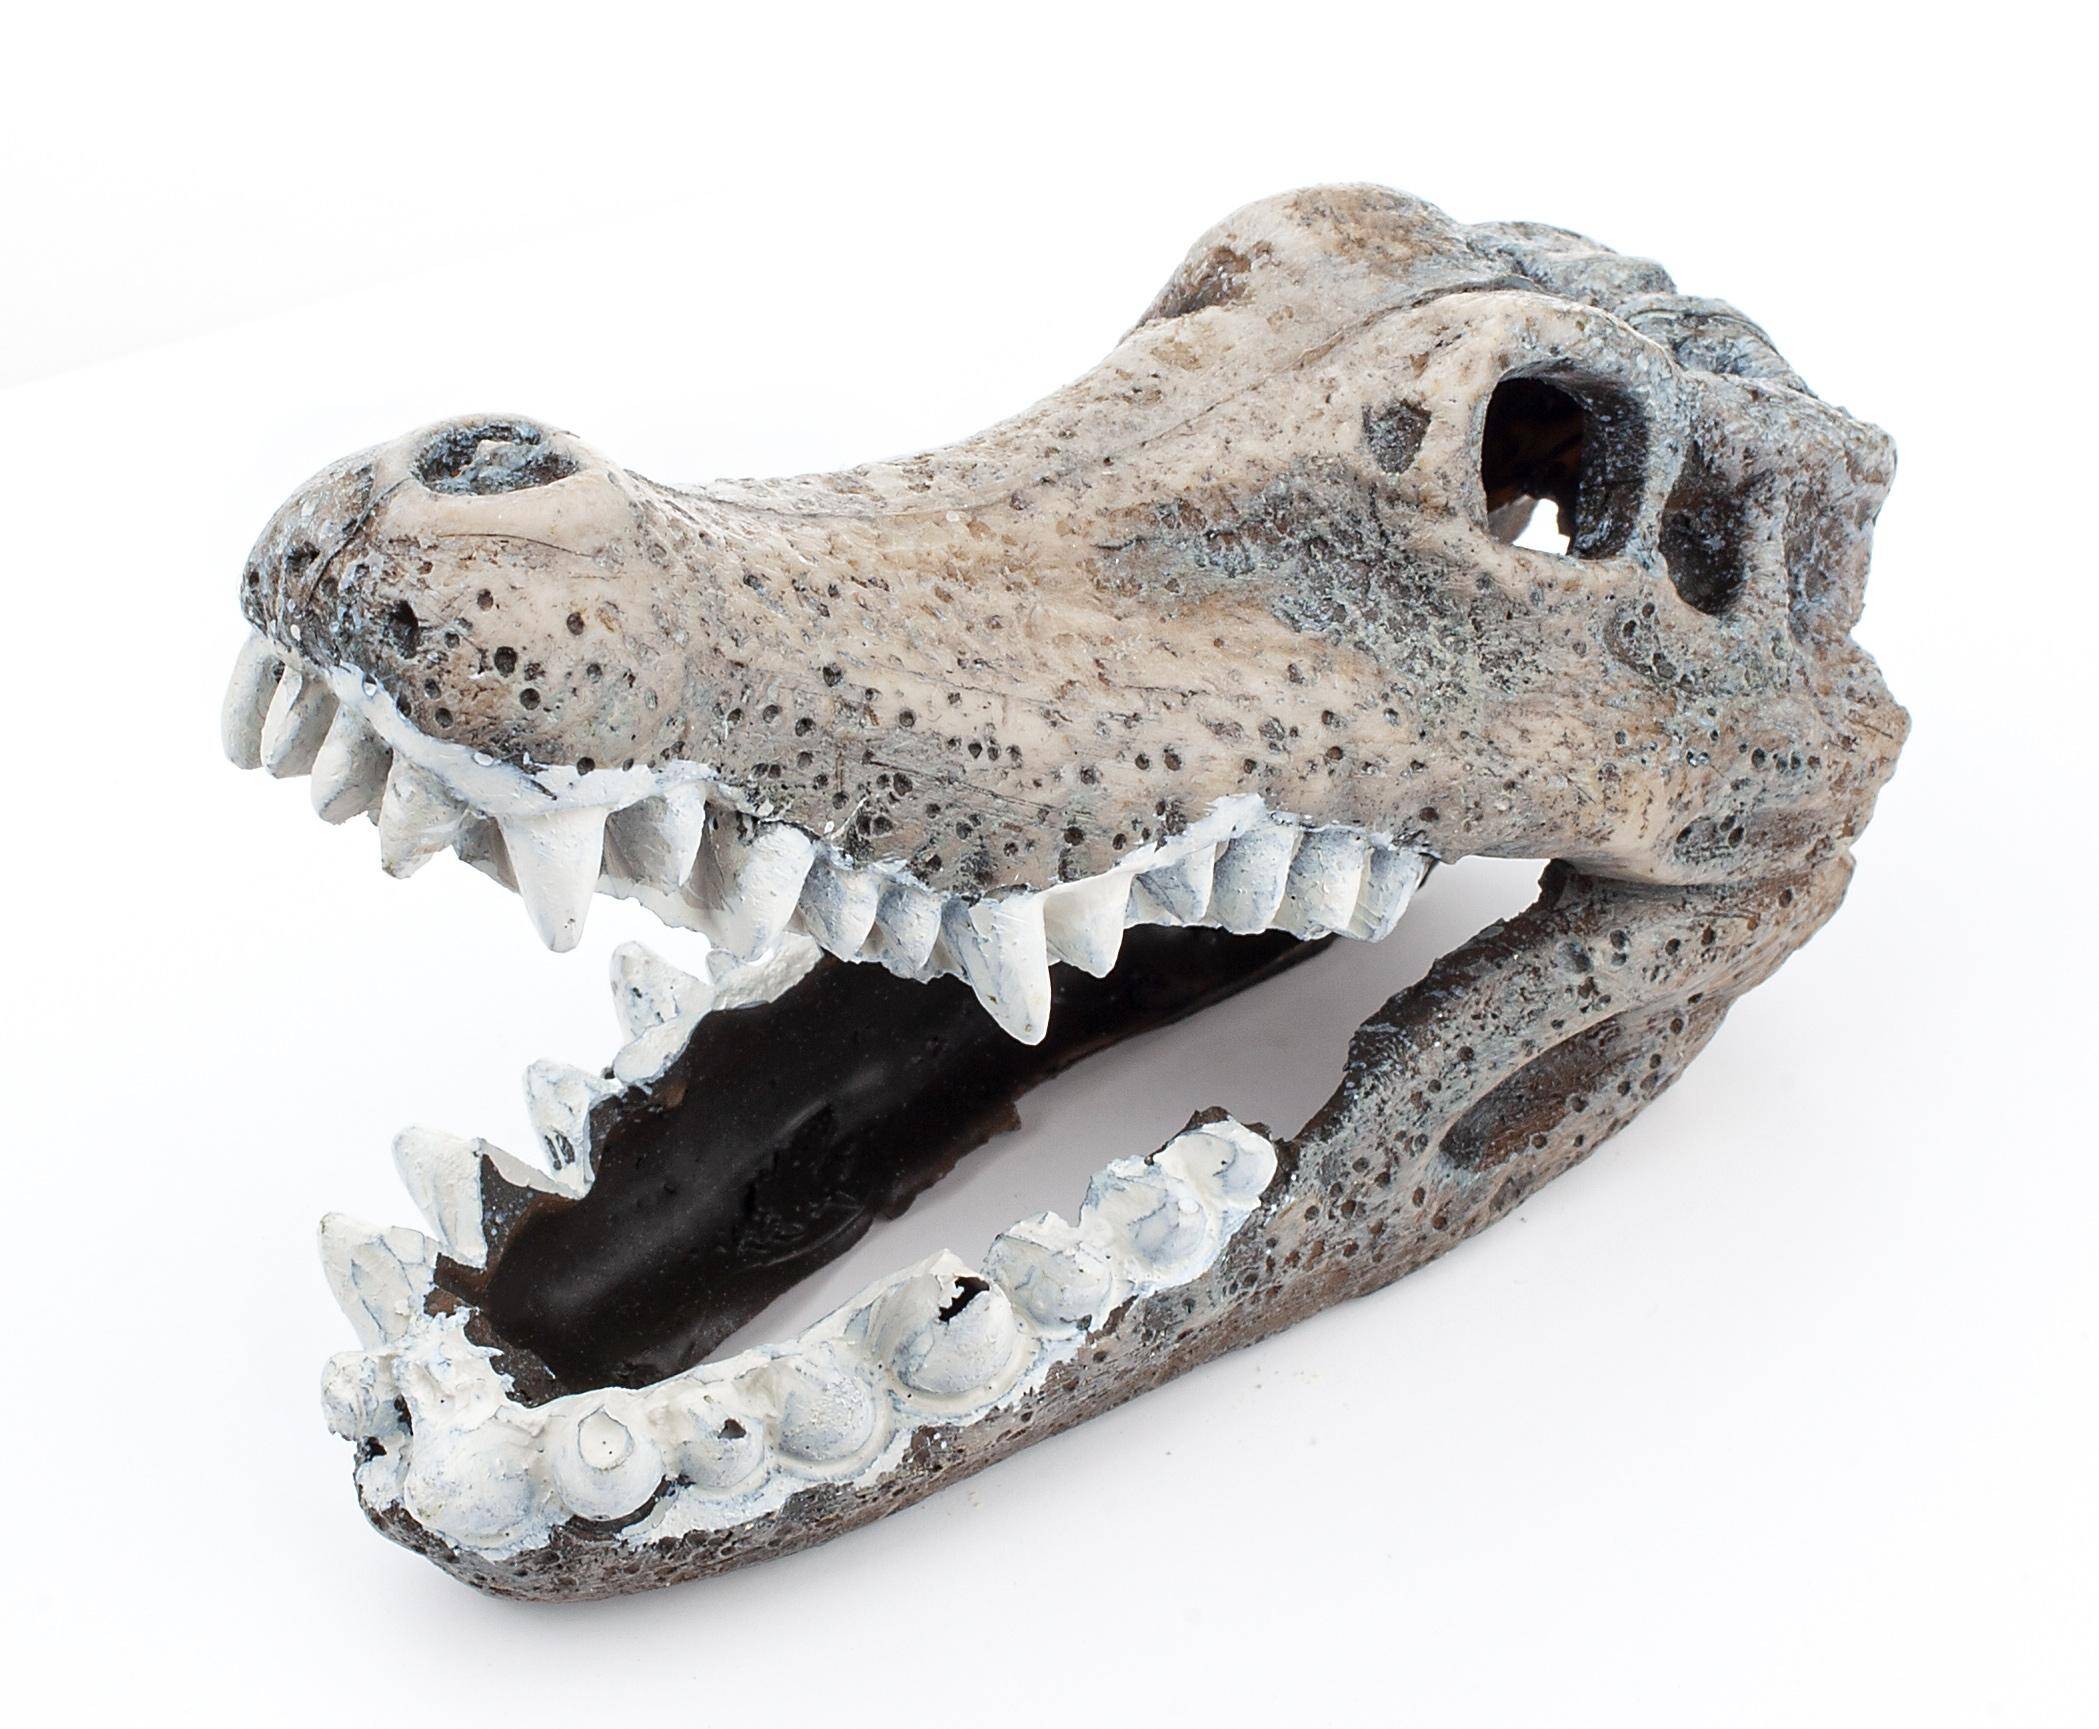 Aquarienschmuck - Schädel des Krokodils Happet U778 11cm (S-U778KW)